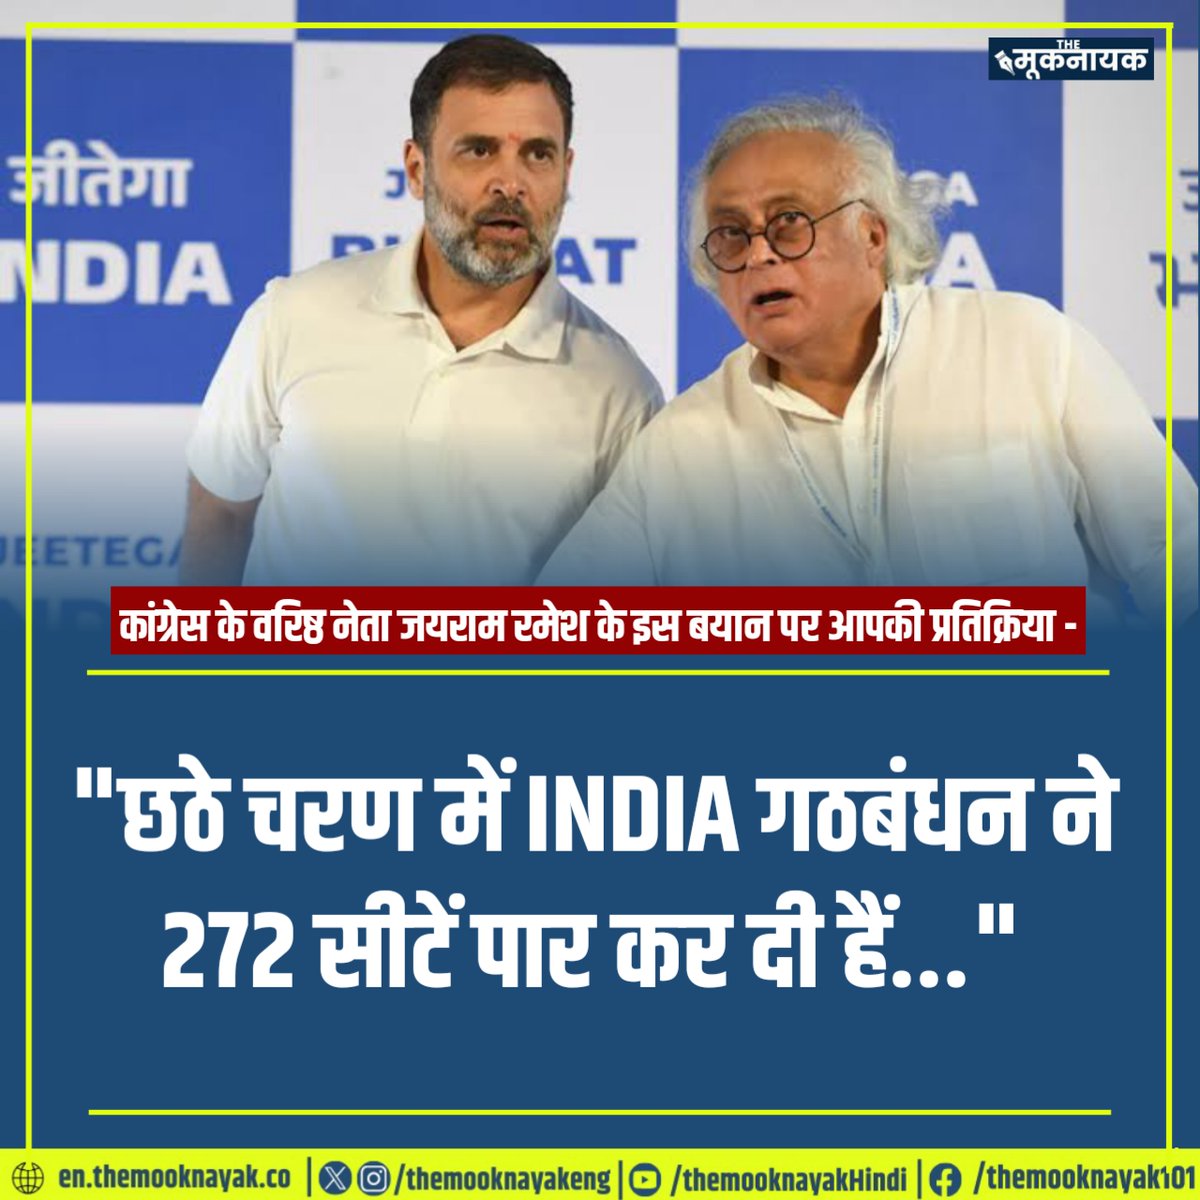 कांग्रेस के वरिष्ठ नेता जयराम रमेश के इस बयान पर आपकी प्रतिक्रिया - 'छठे चरण में INDIA गठबंधन ने 272 सीटें पार कर दी हैं...'